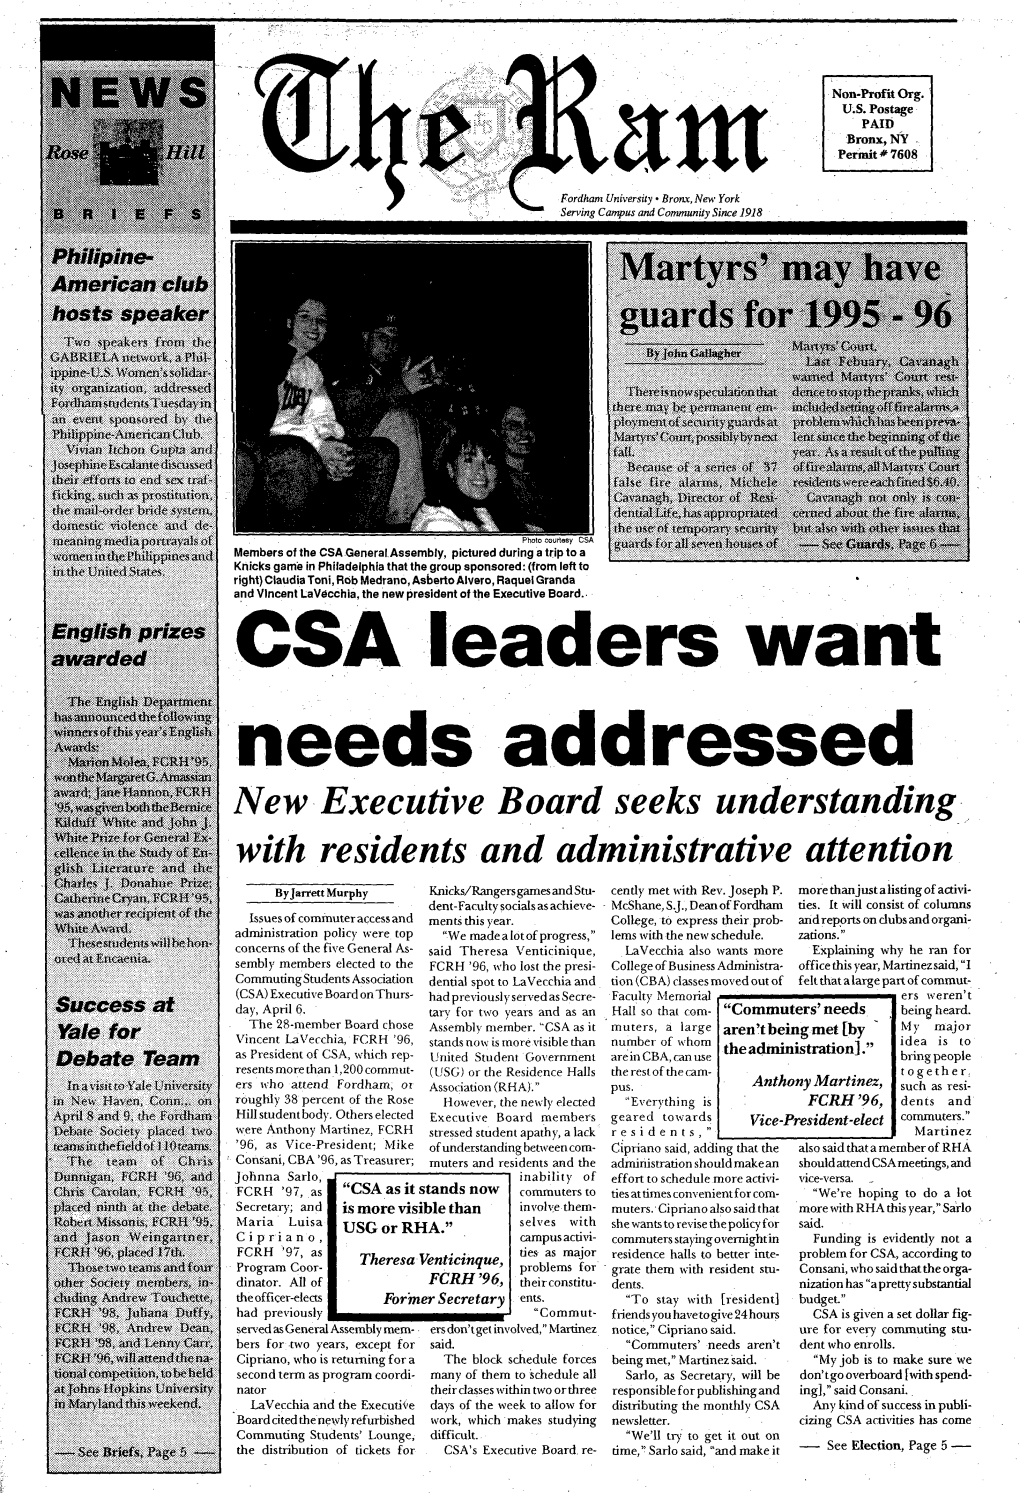 CSA Leaders Want Needs Addressed